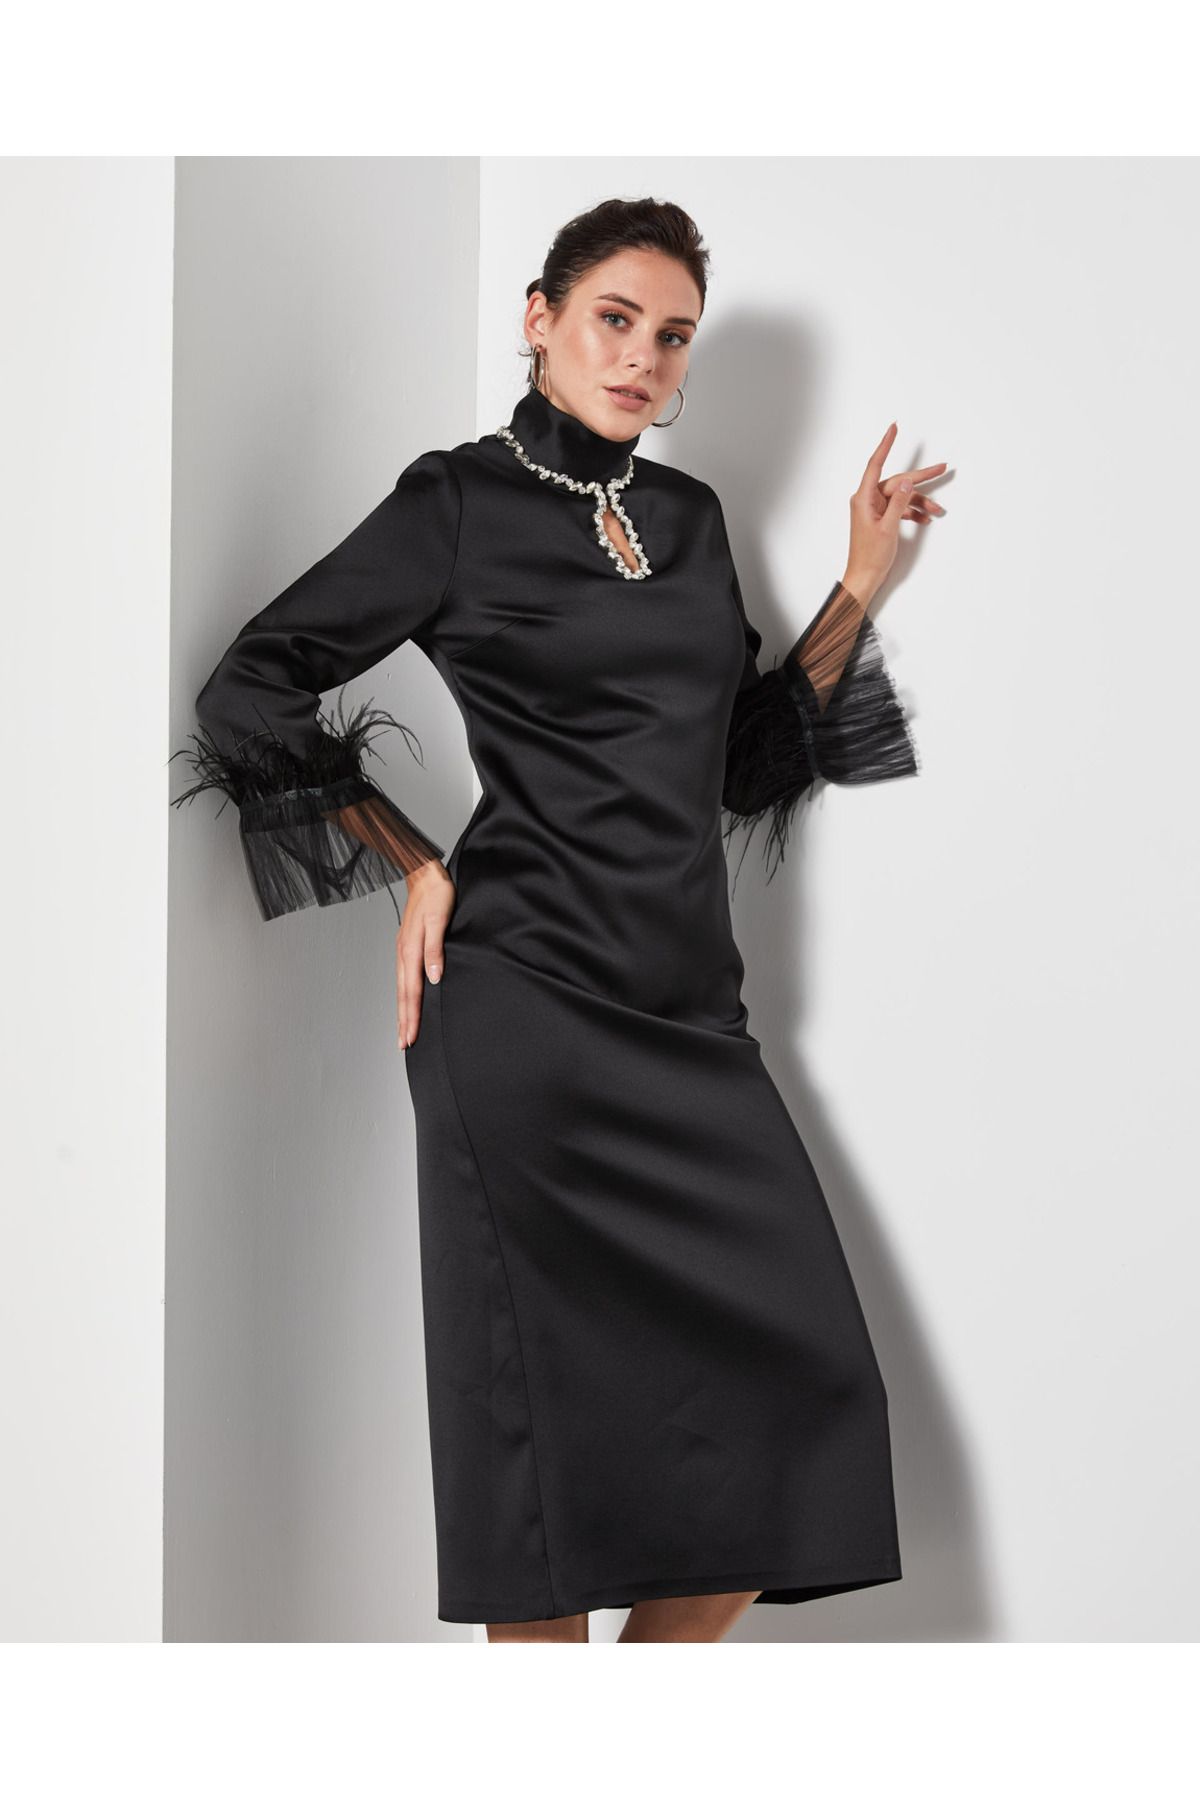 Serpil Serpil Kadın Siyah Elbise 37055